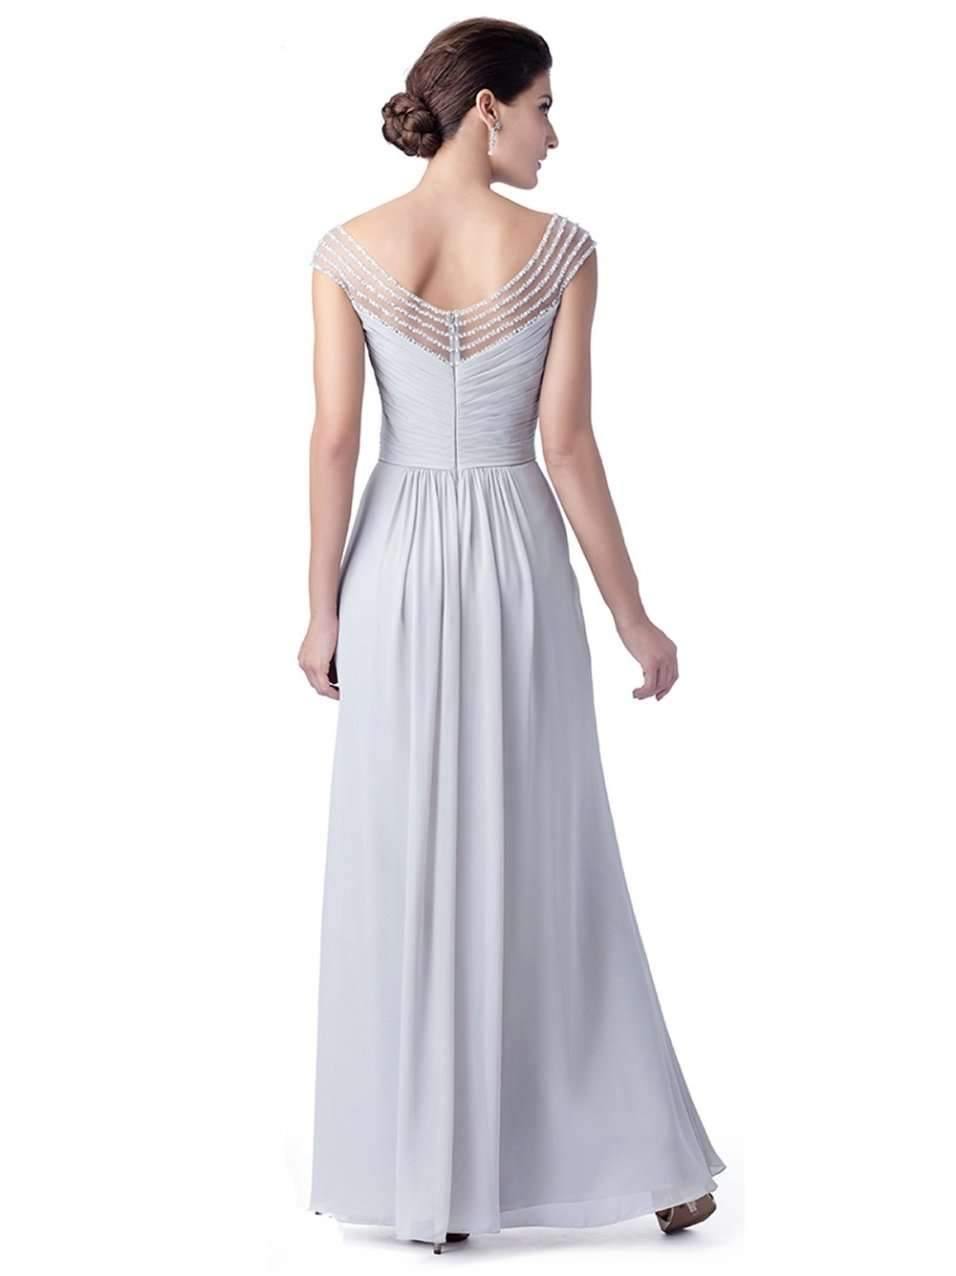 VENUS - Loretta - Adore Bridal and Occasion Wear